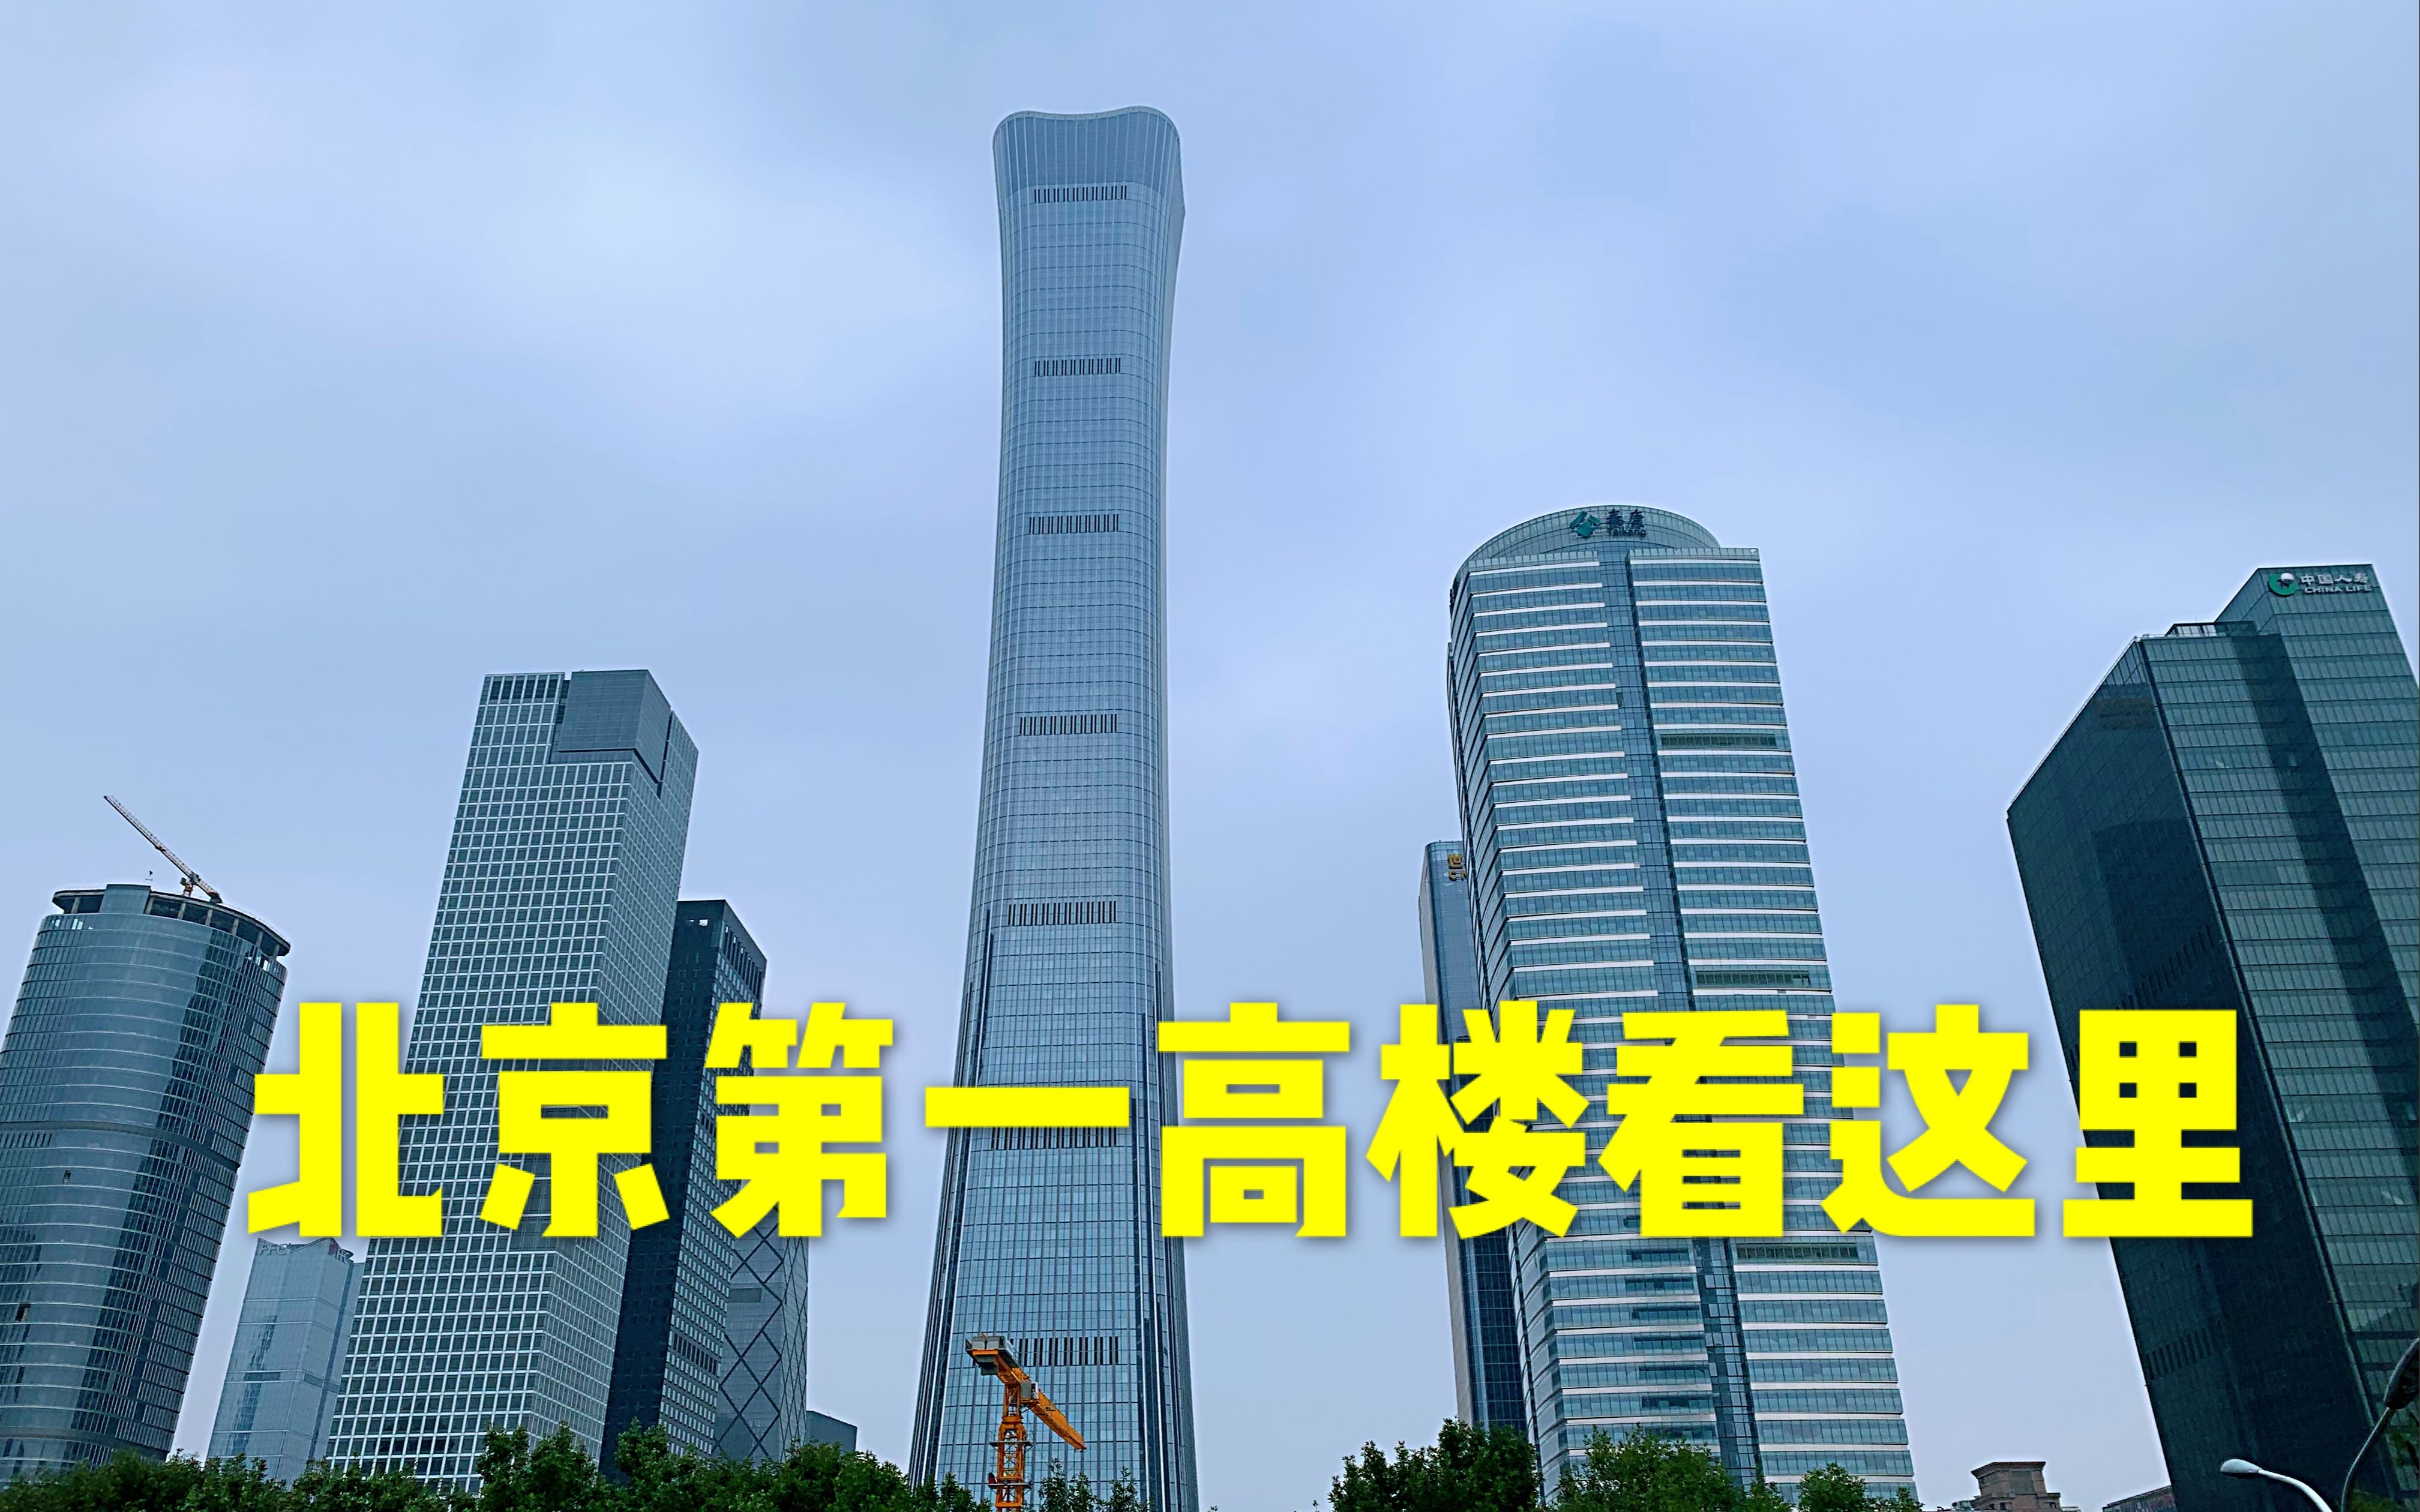 活动作品北京第一高楼中国尊耗资240亿比迪拜塔成本都贵现在可以进入